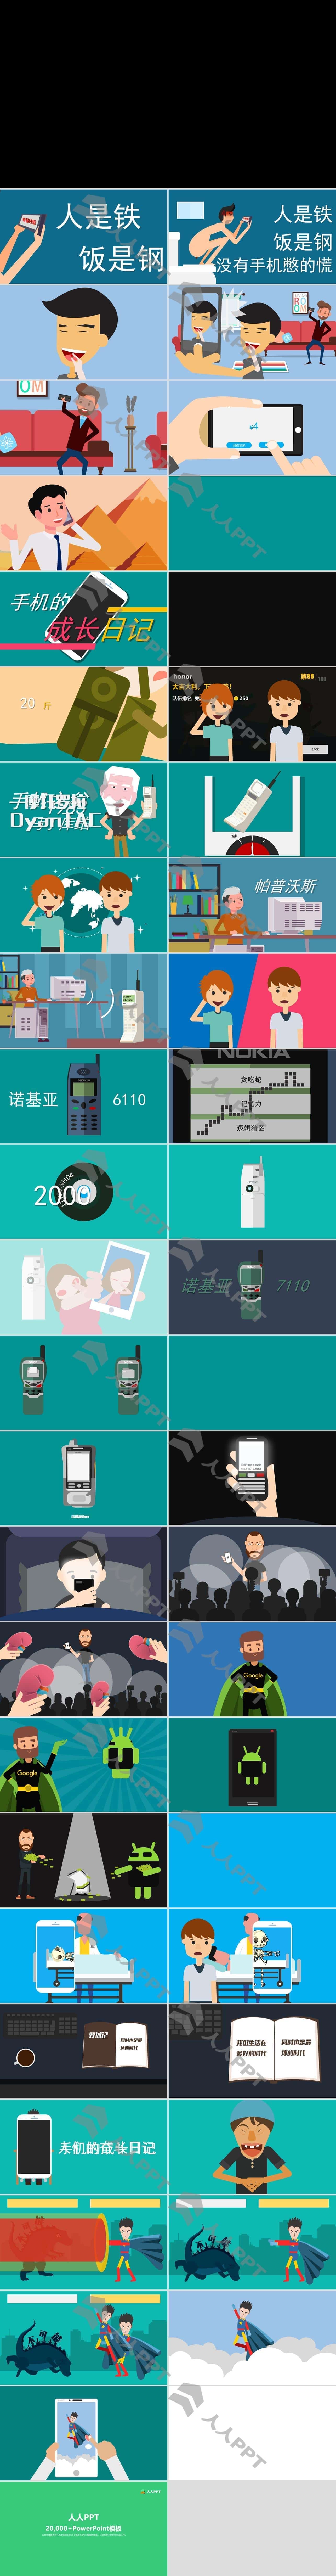 《手机的成长日记》――手机进化史动画影片PPT模板长图